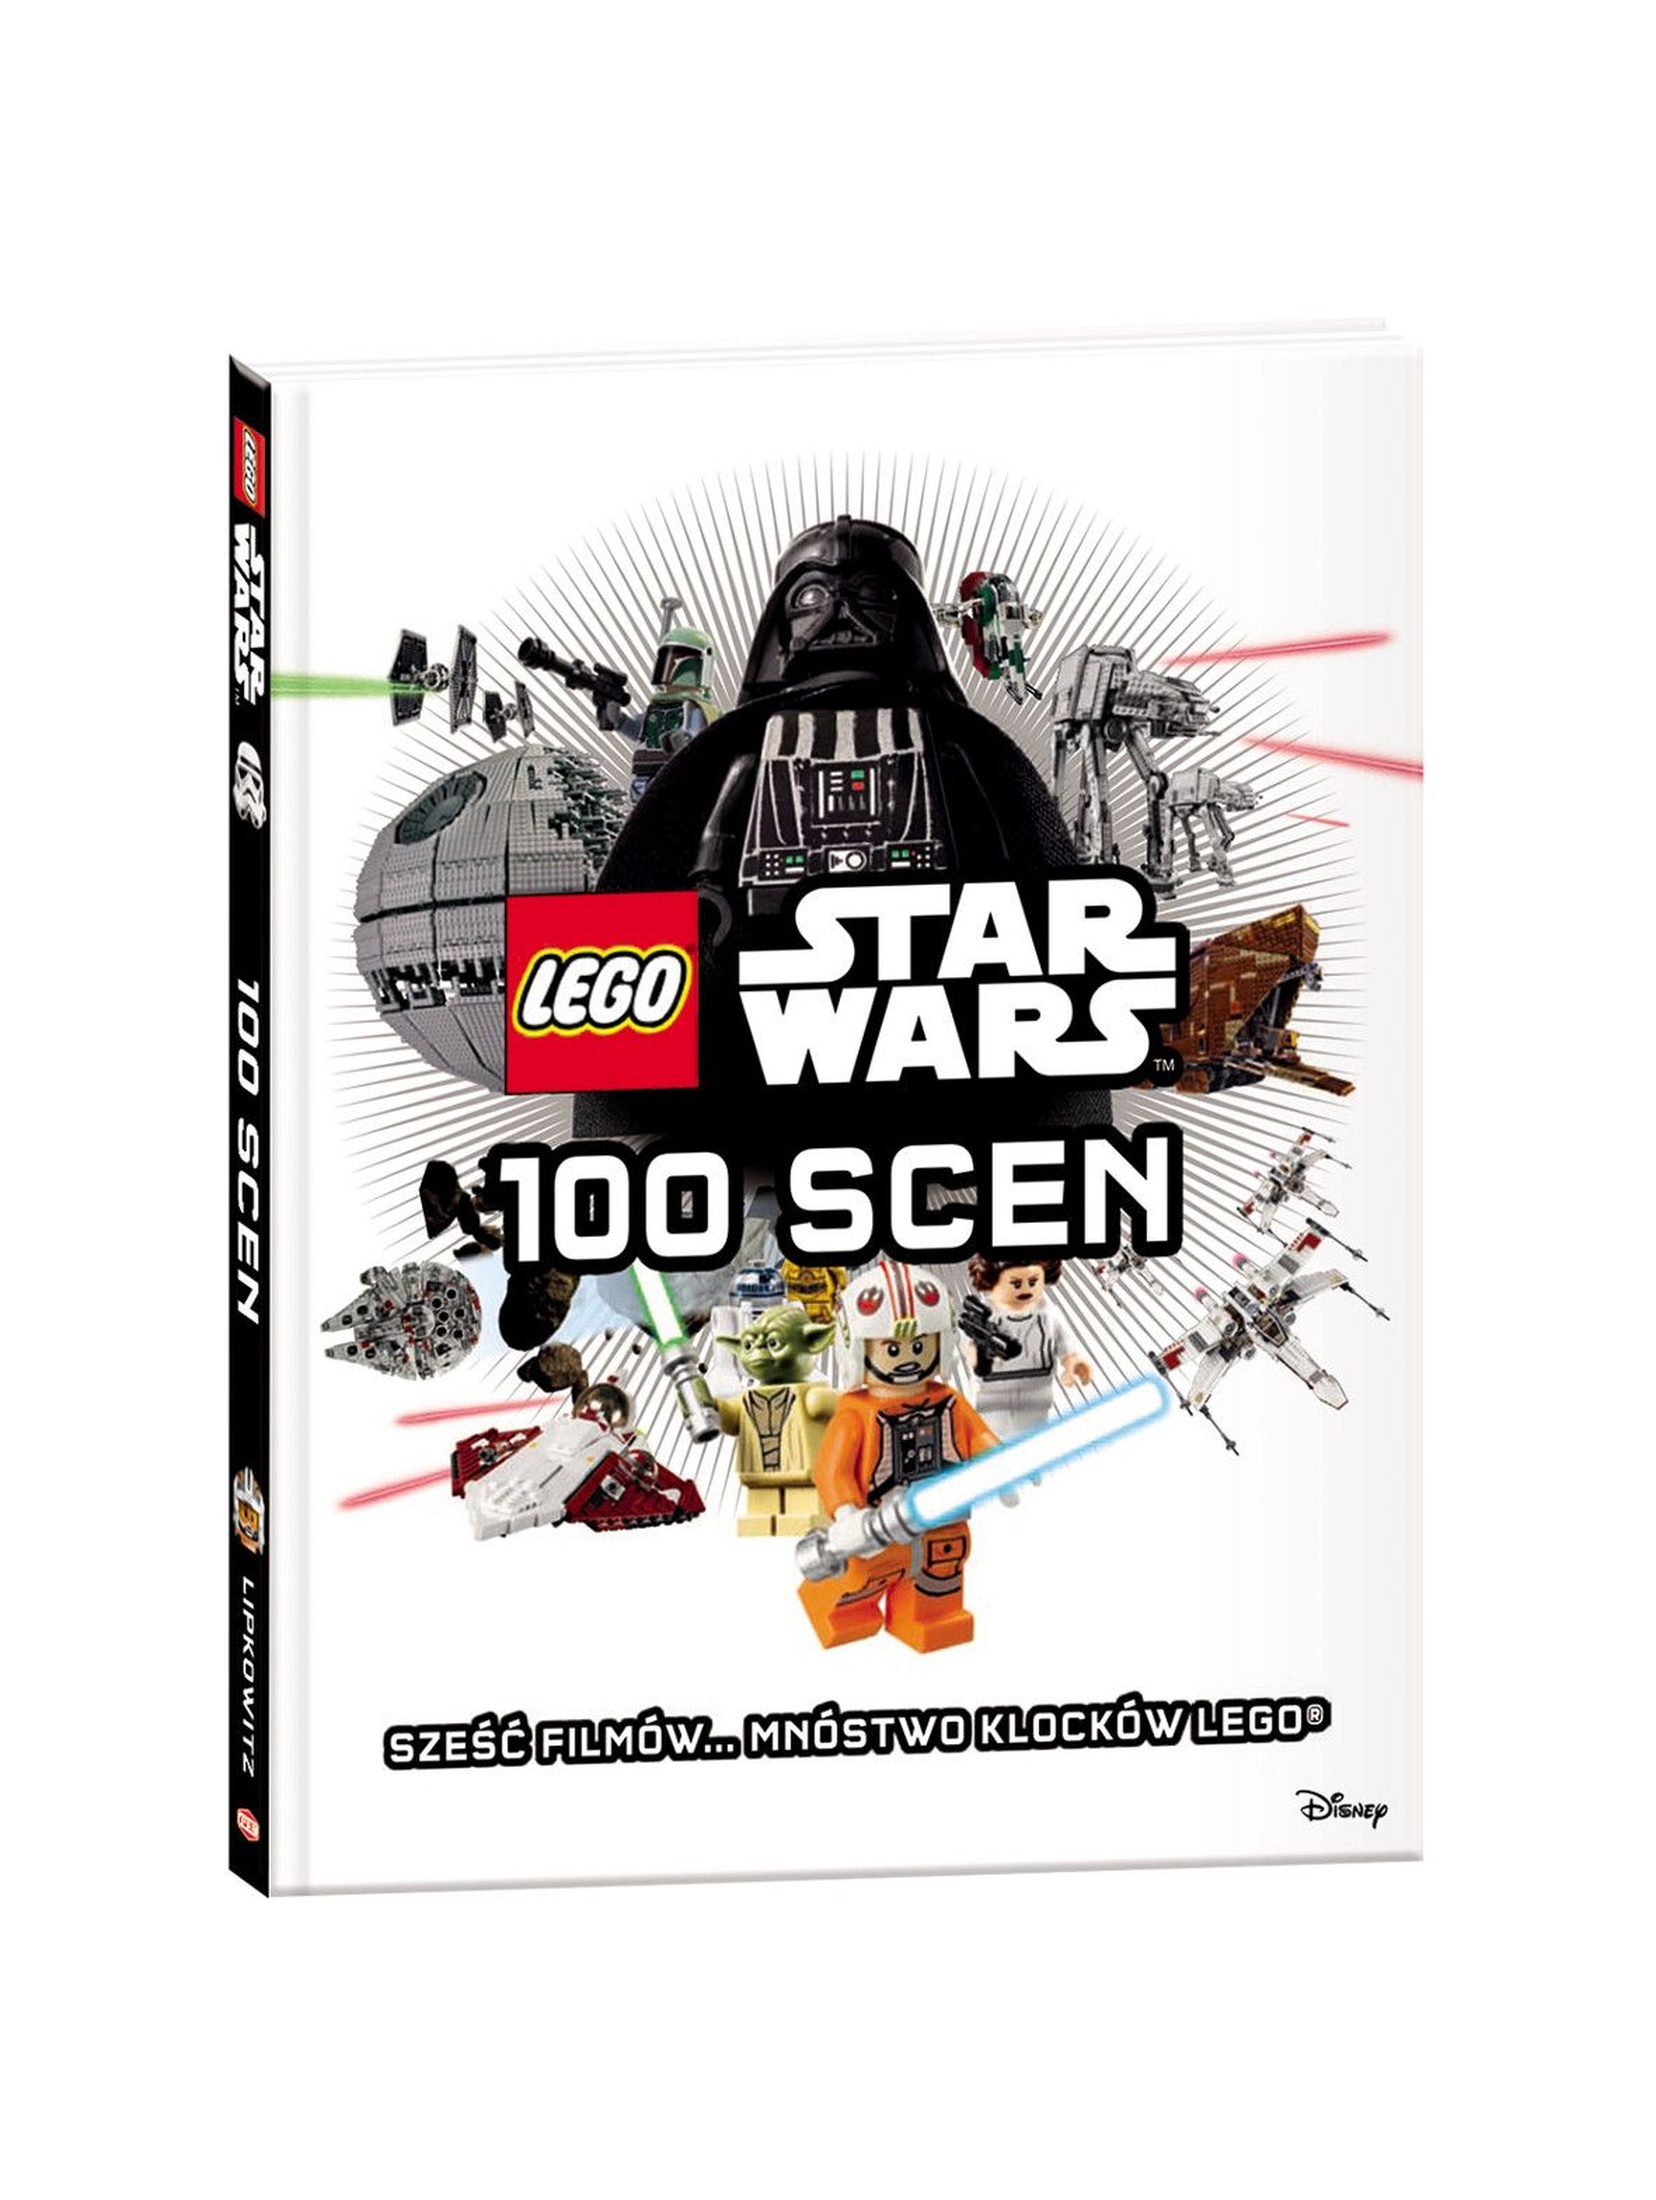 Lego Star Wars 100 scen